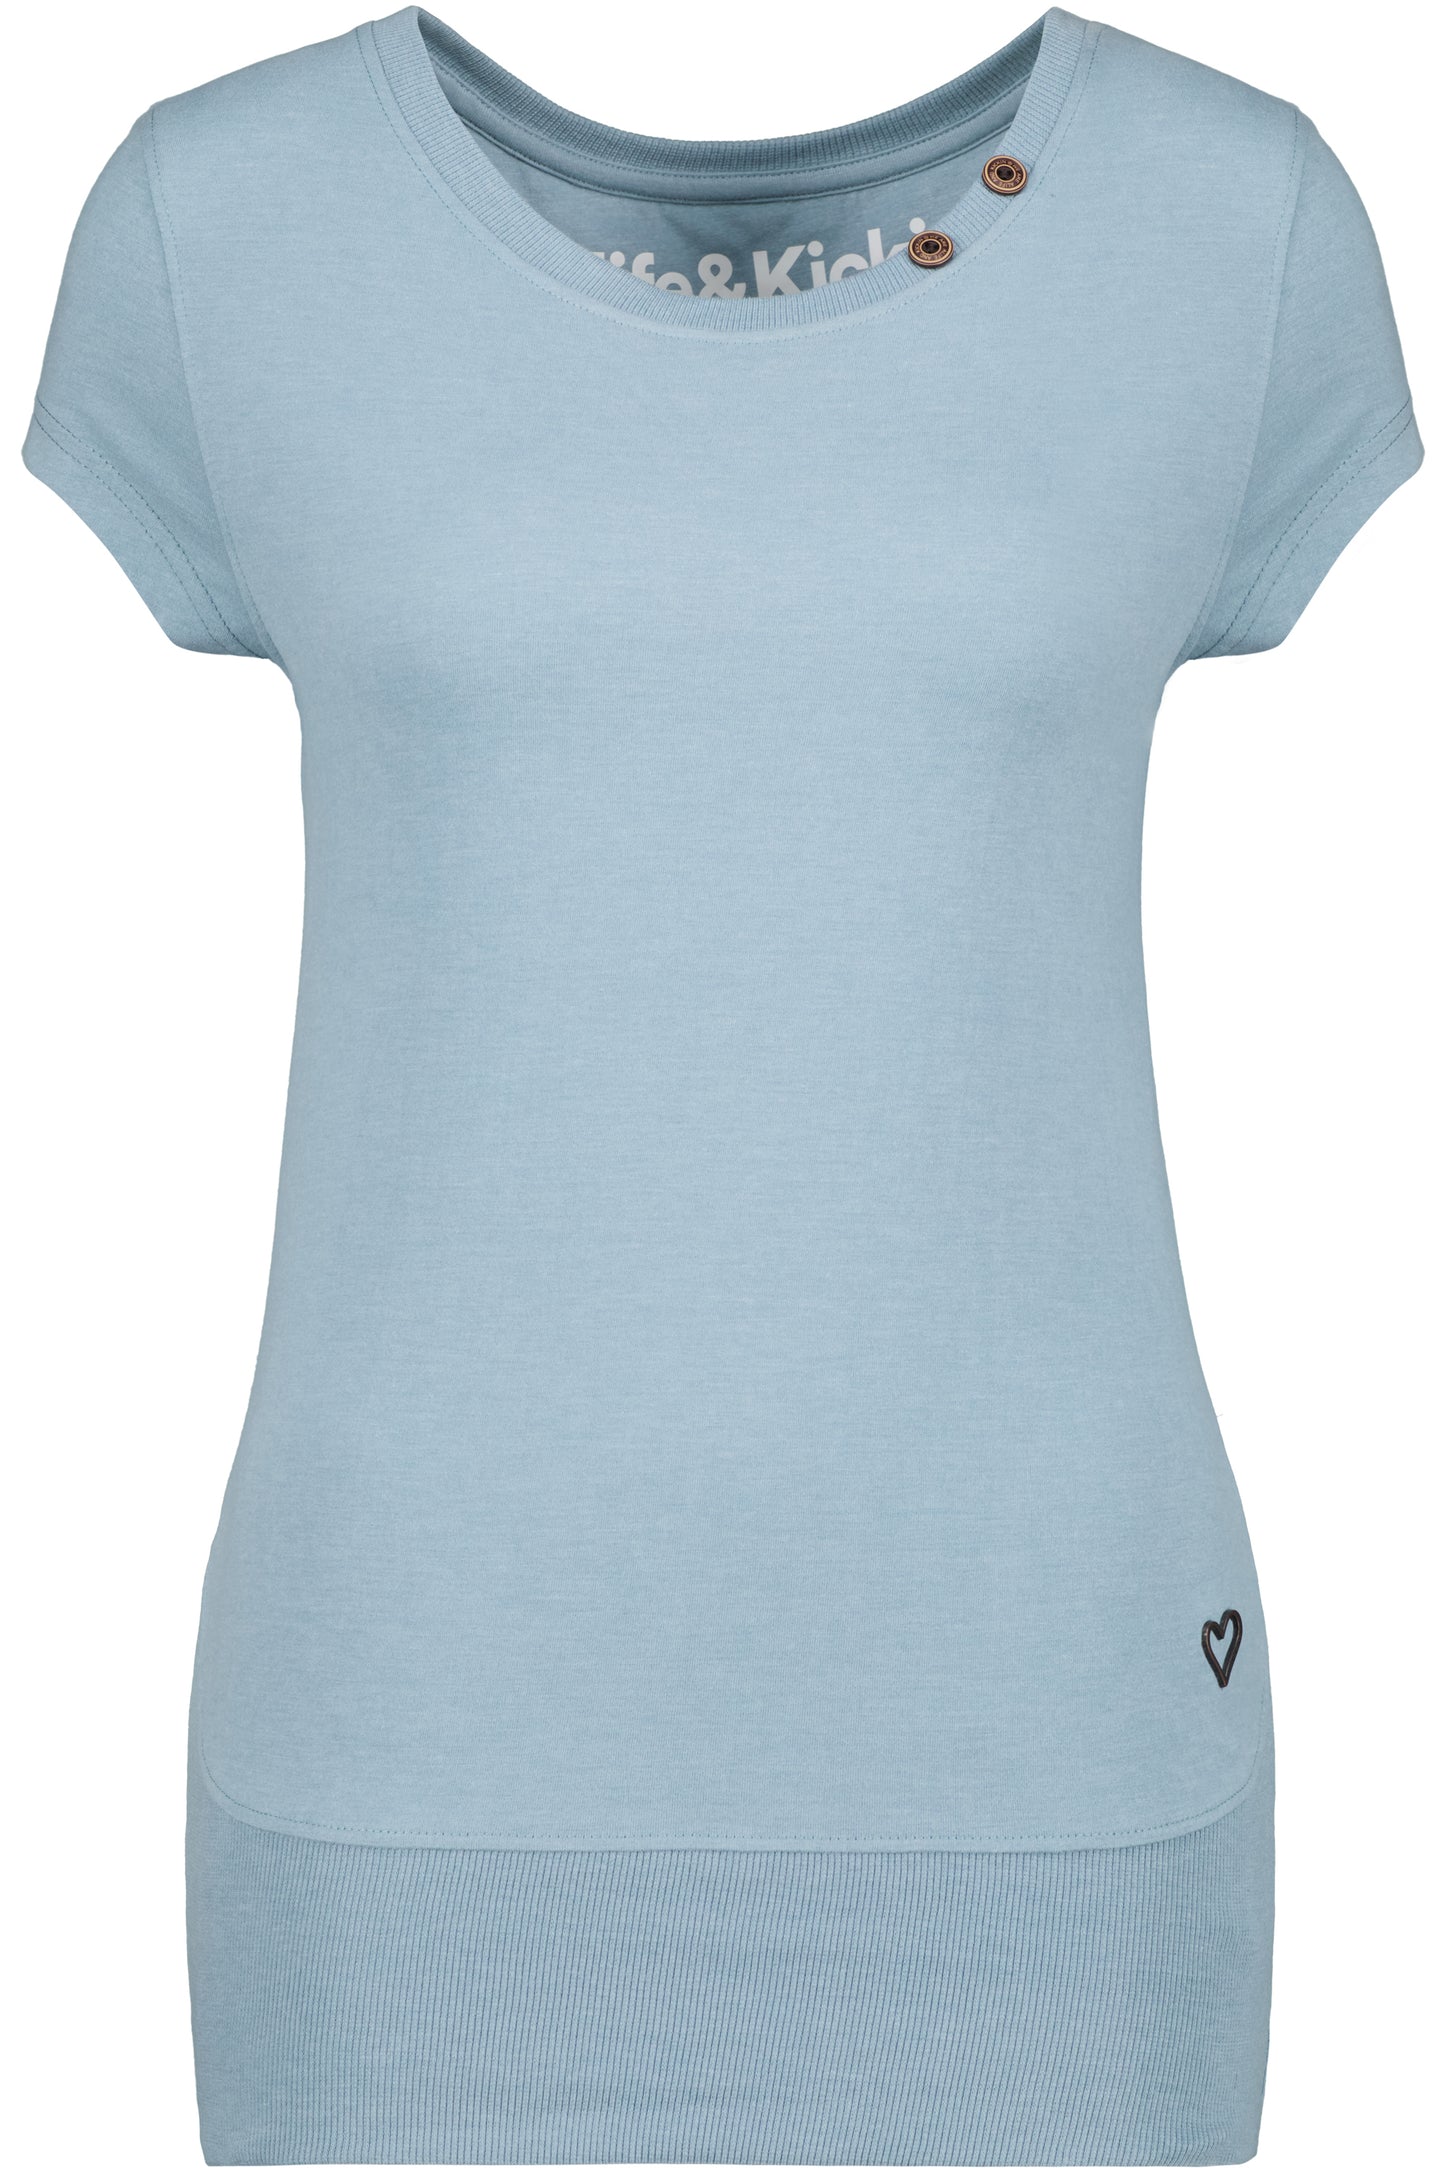 CocoAK A T-Shirt von Alife and Kickin: Farbenfroh und modisch Grau